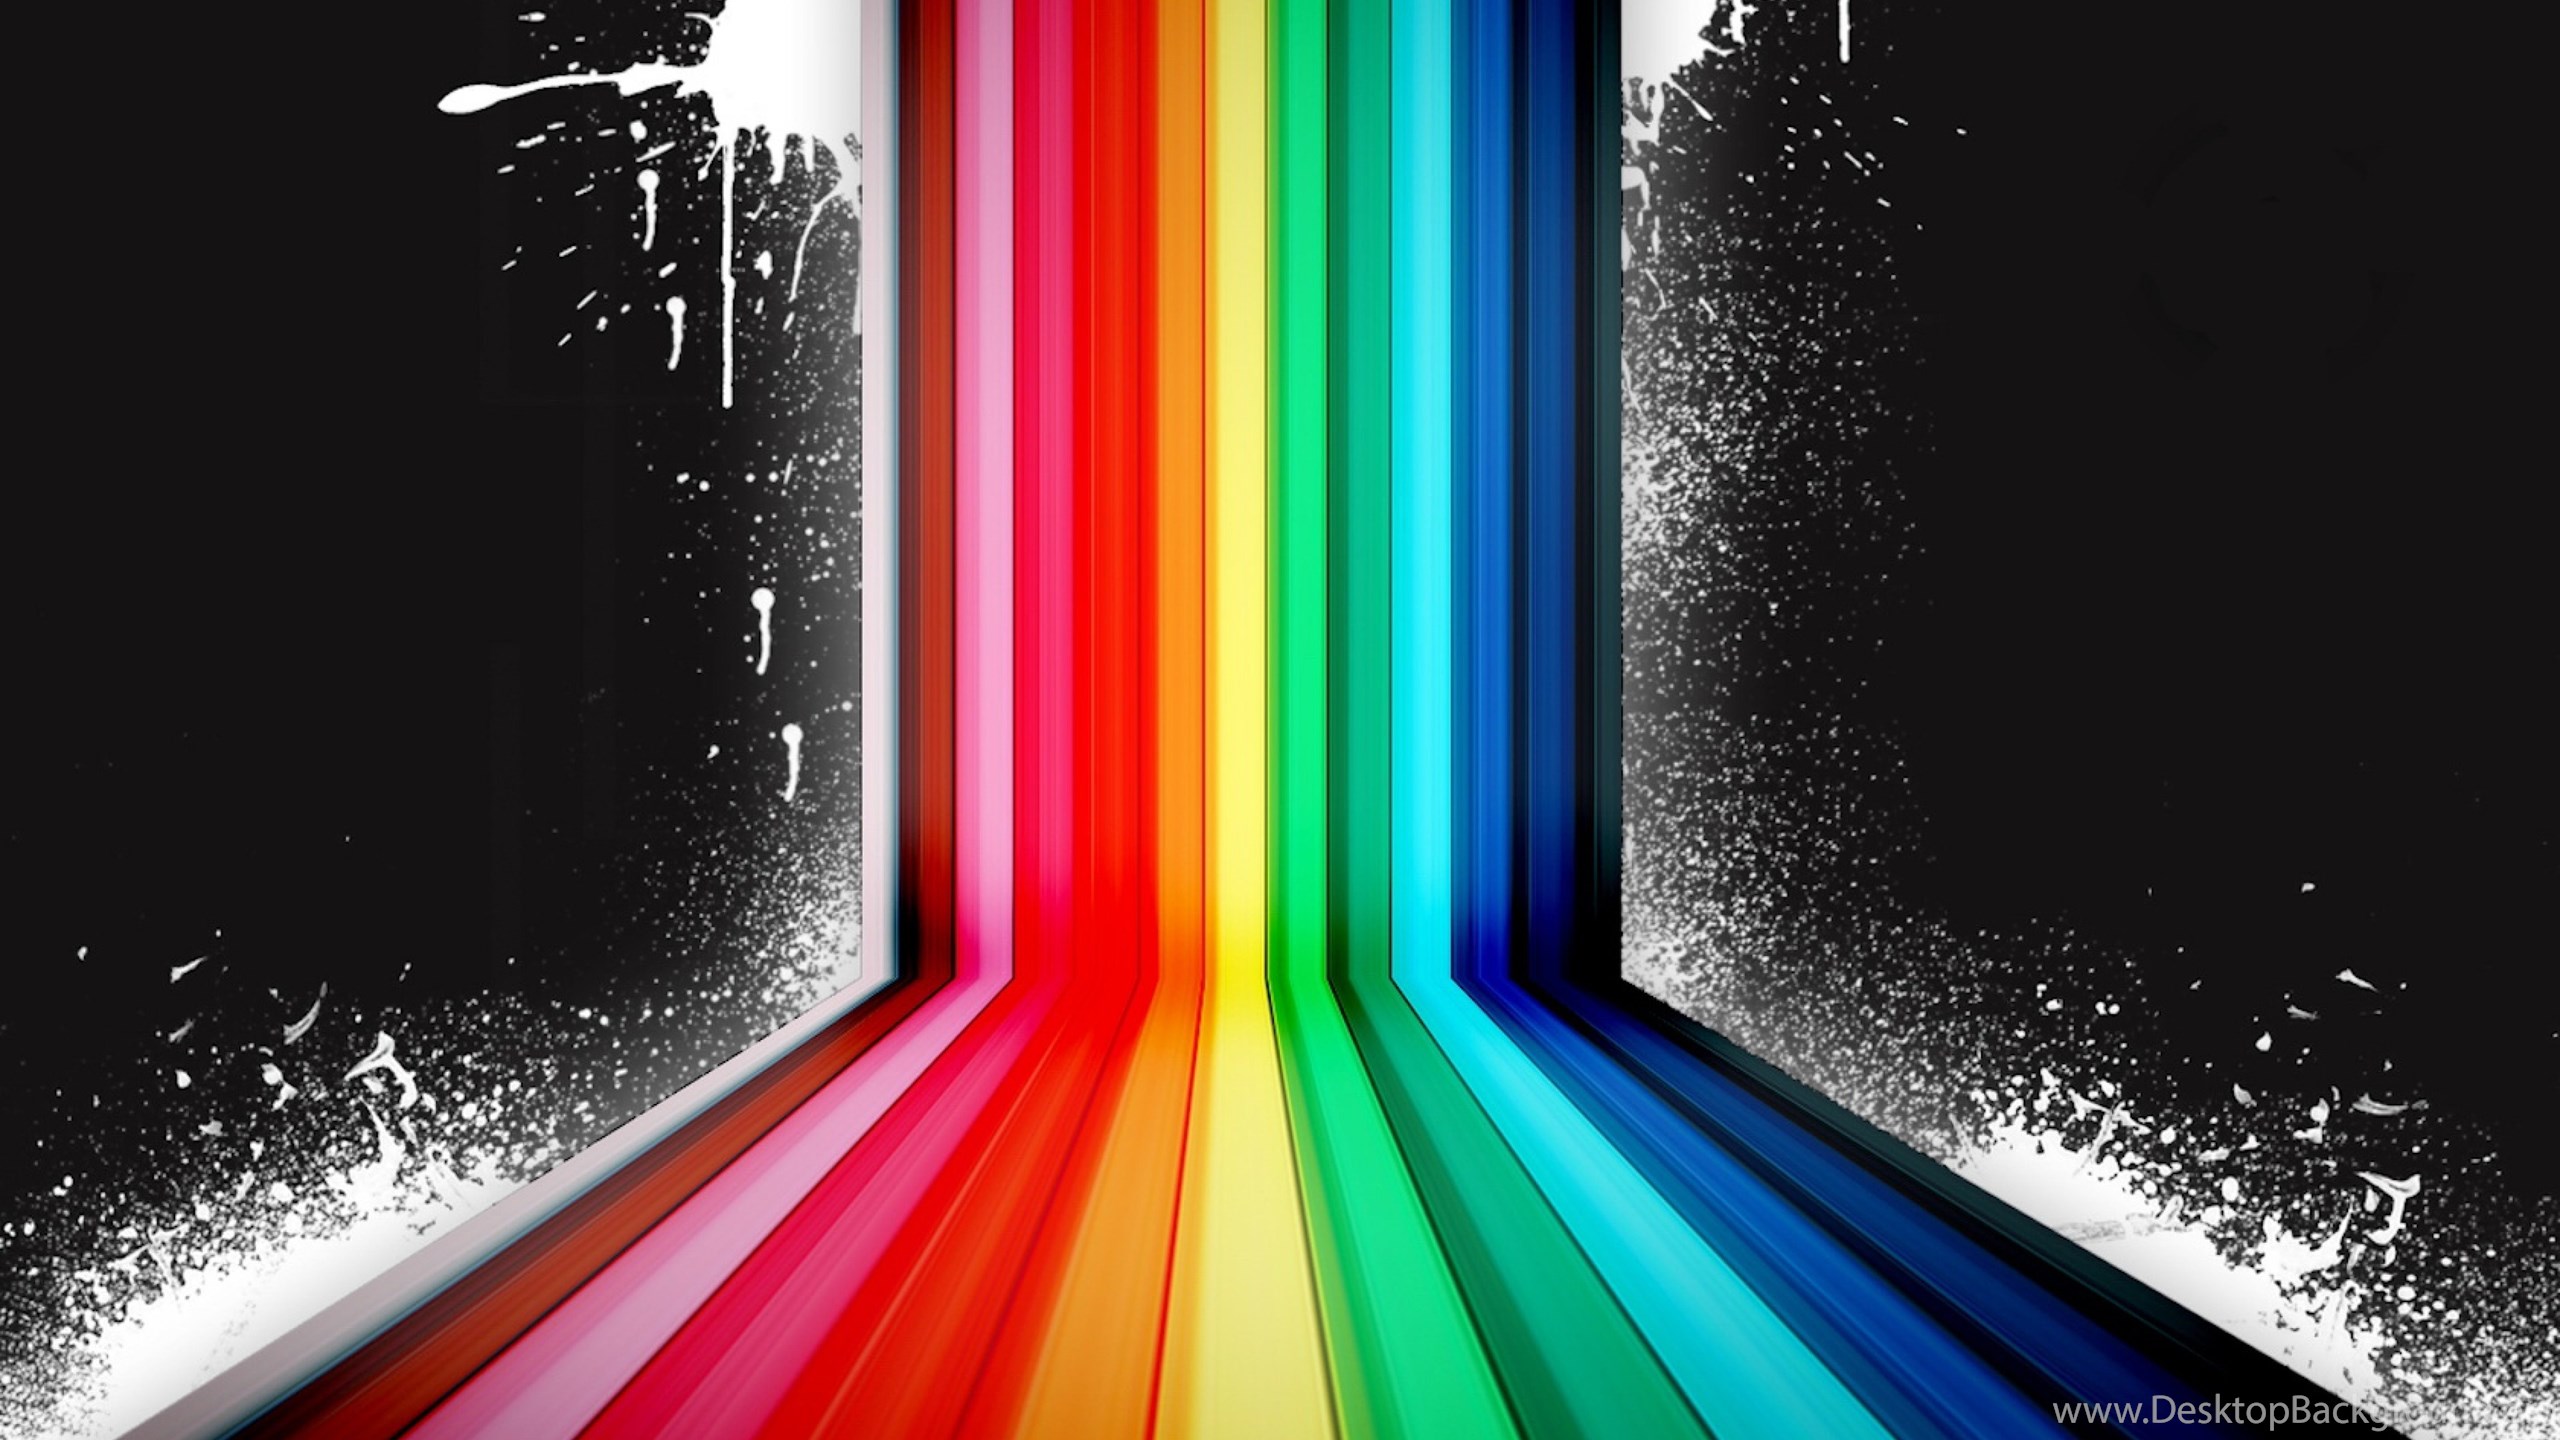 sfondo del desktop arcobaleno,blu,leggero,colorfulness,disegno grafico,linea